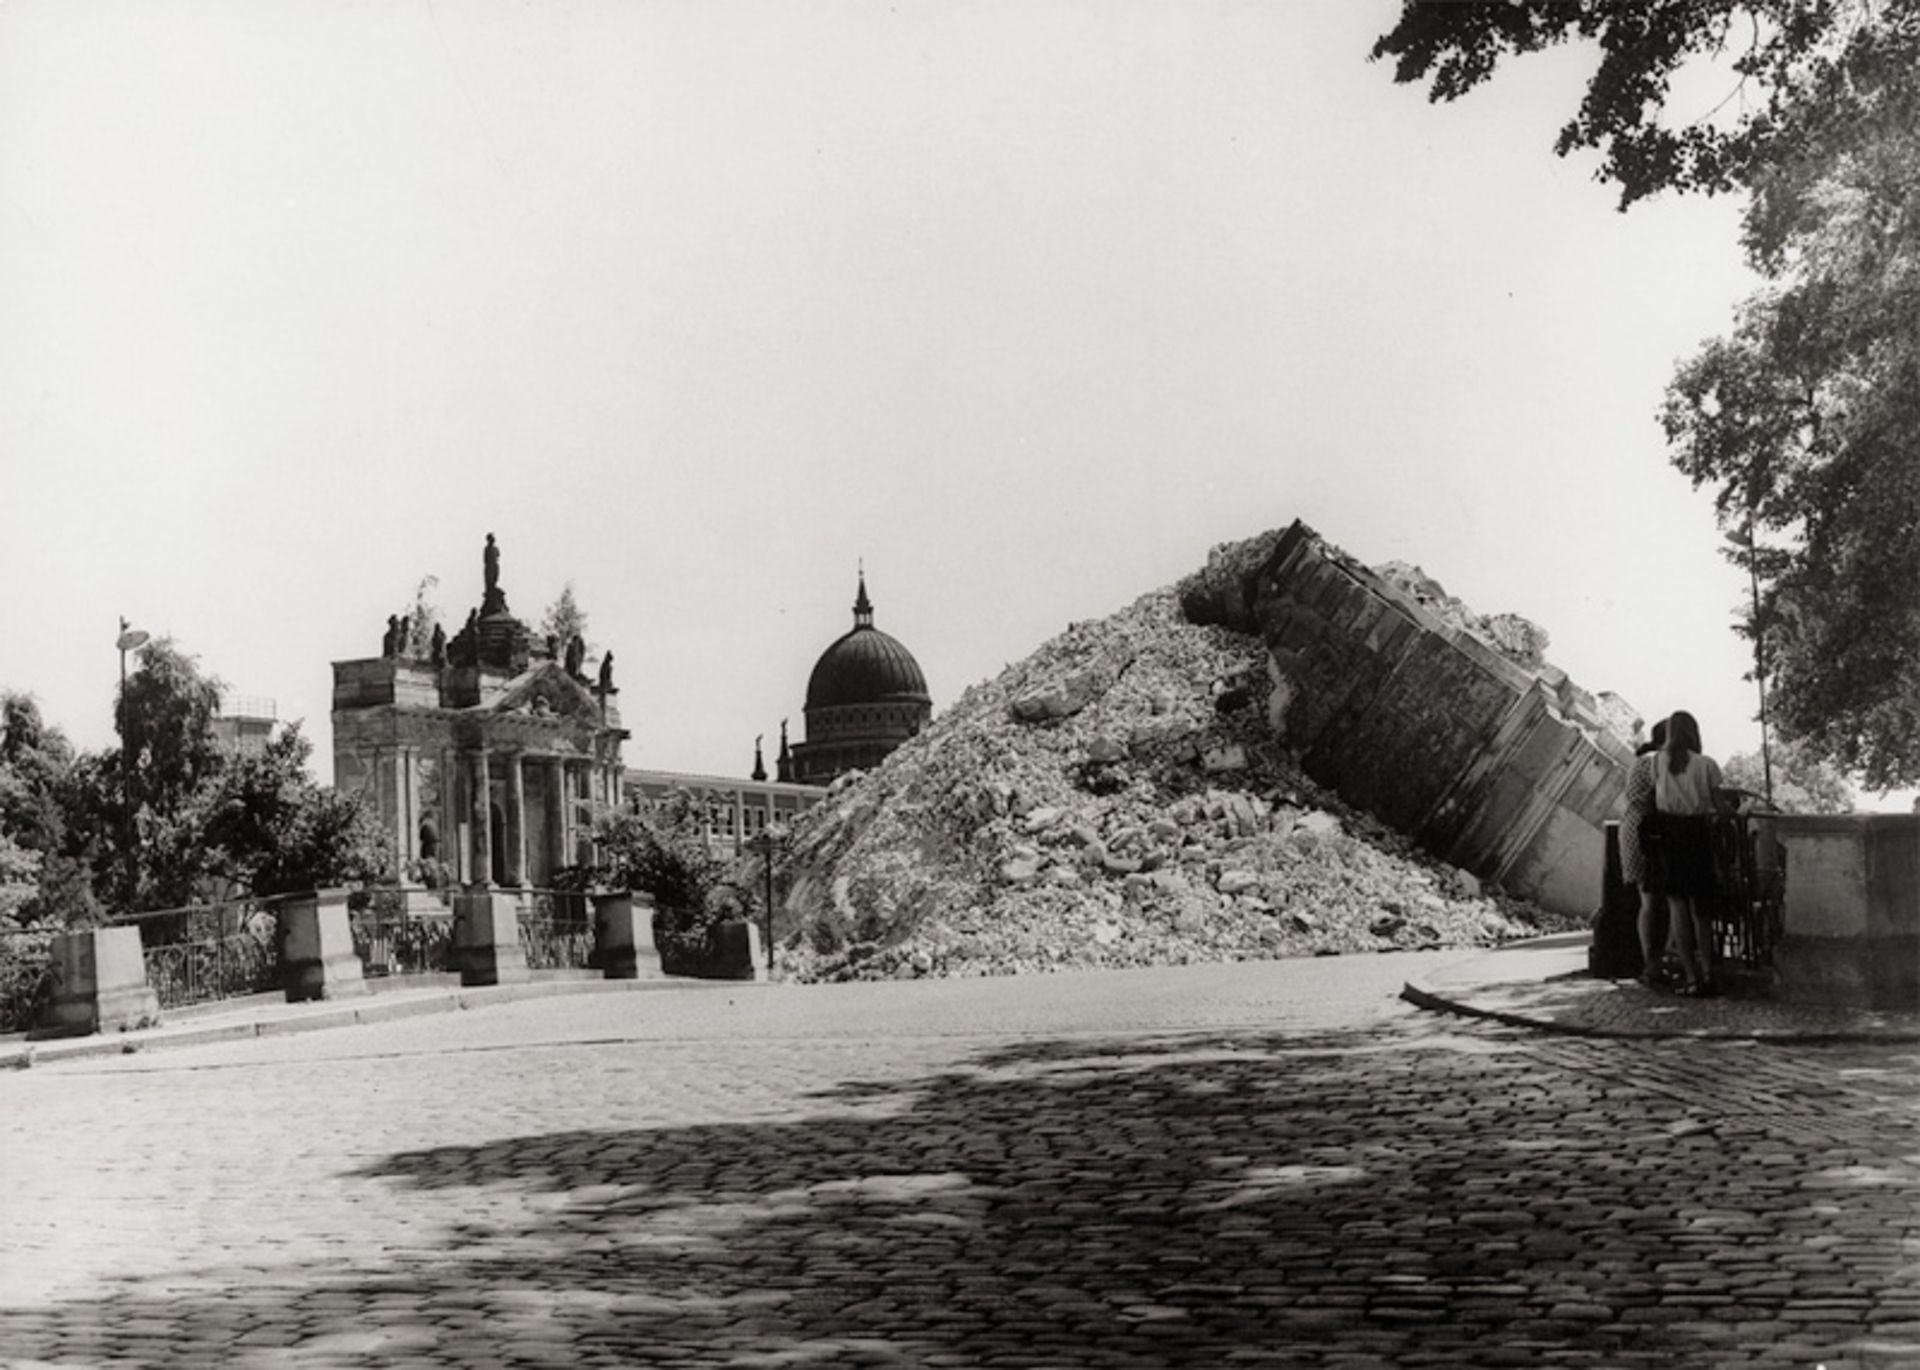 Graetz, Jürgen: After demolition of the Garnisonskirche Potsdam